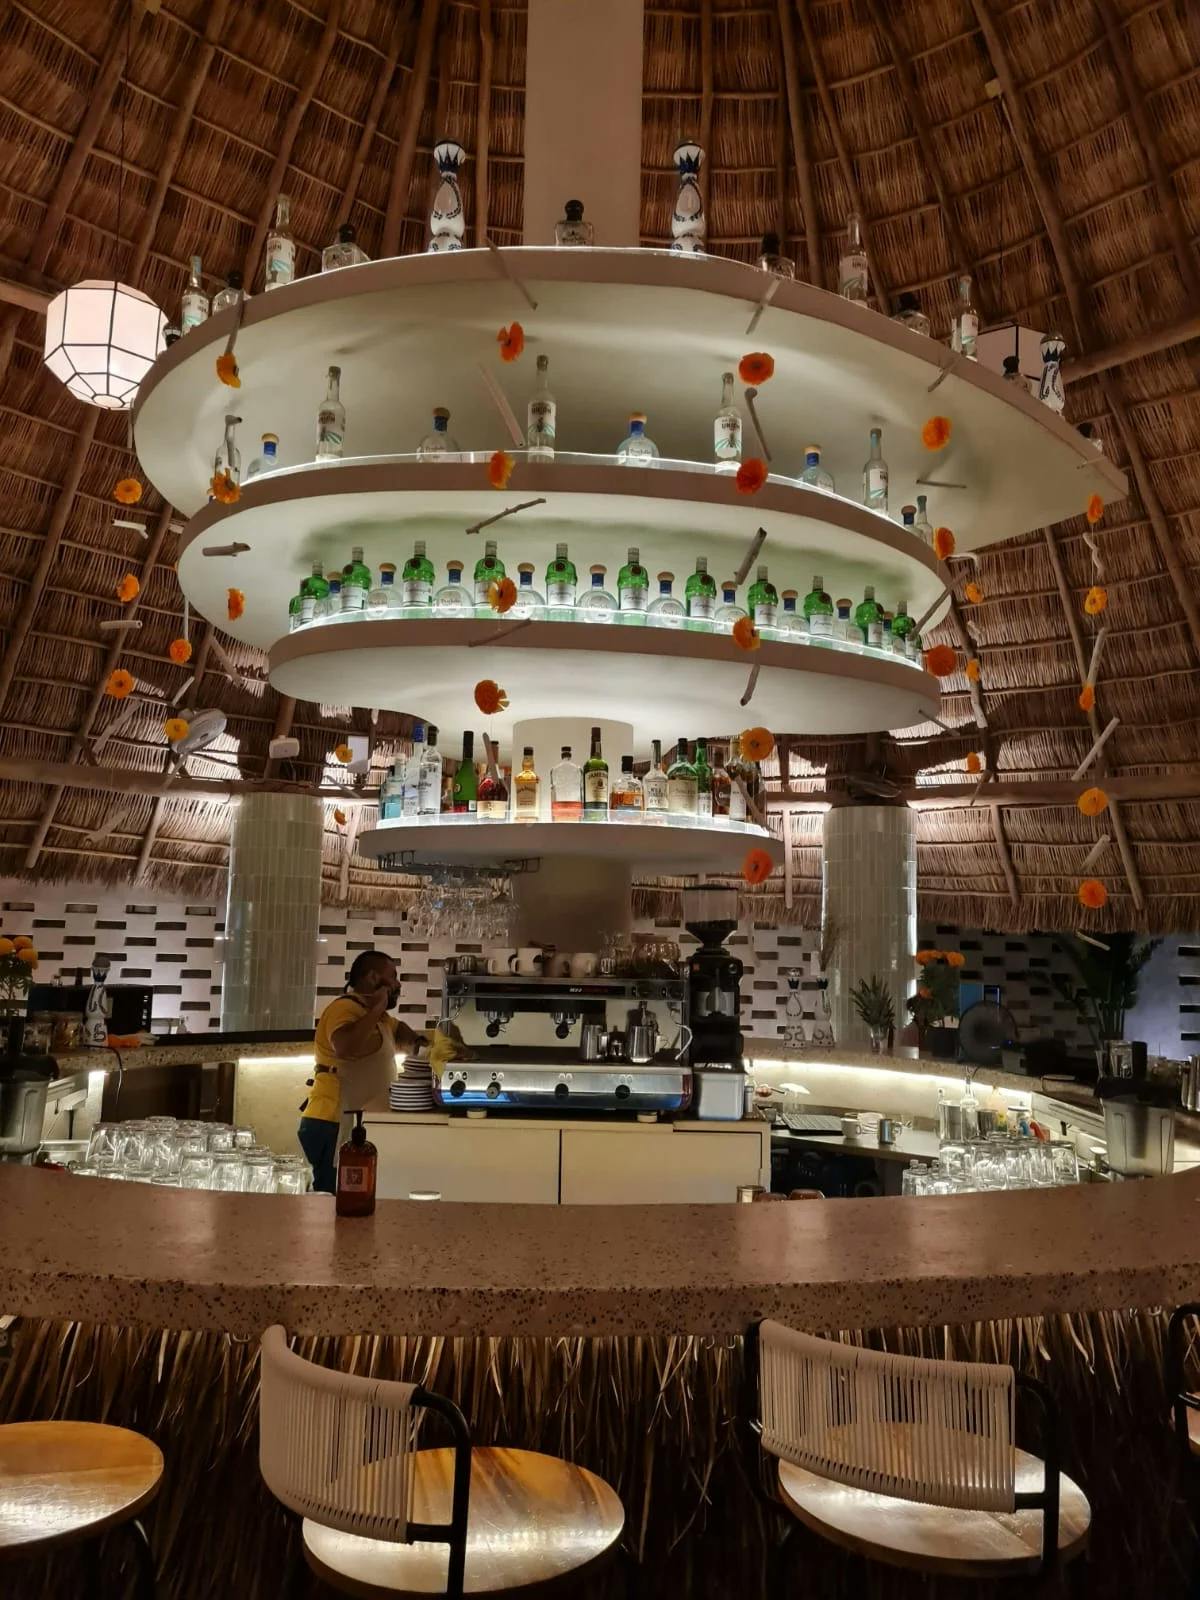 A round bar in an indoor restaurant